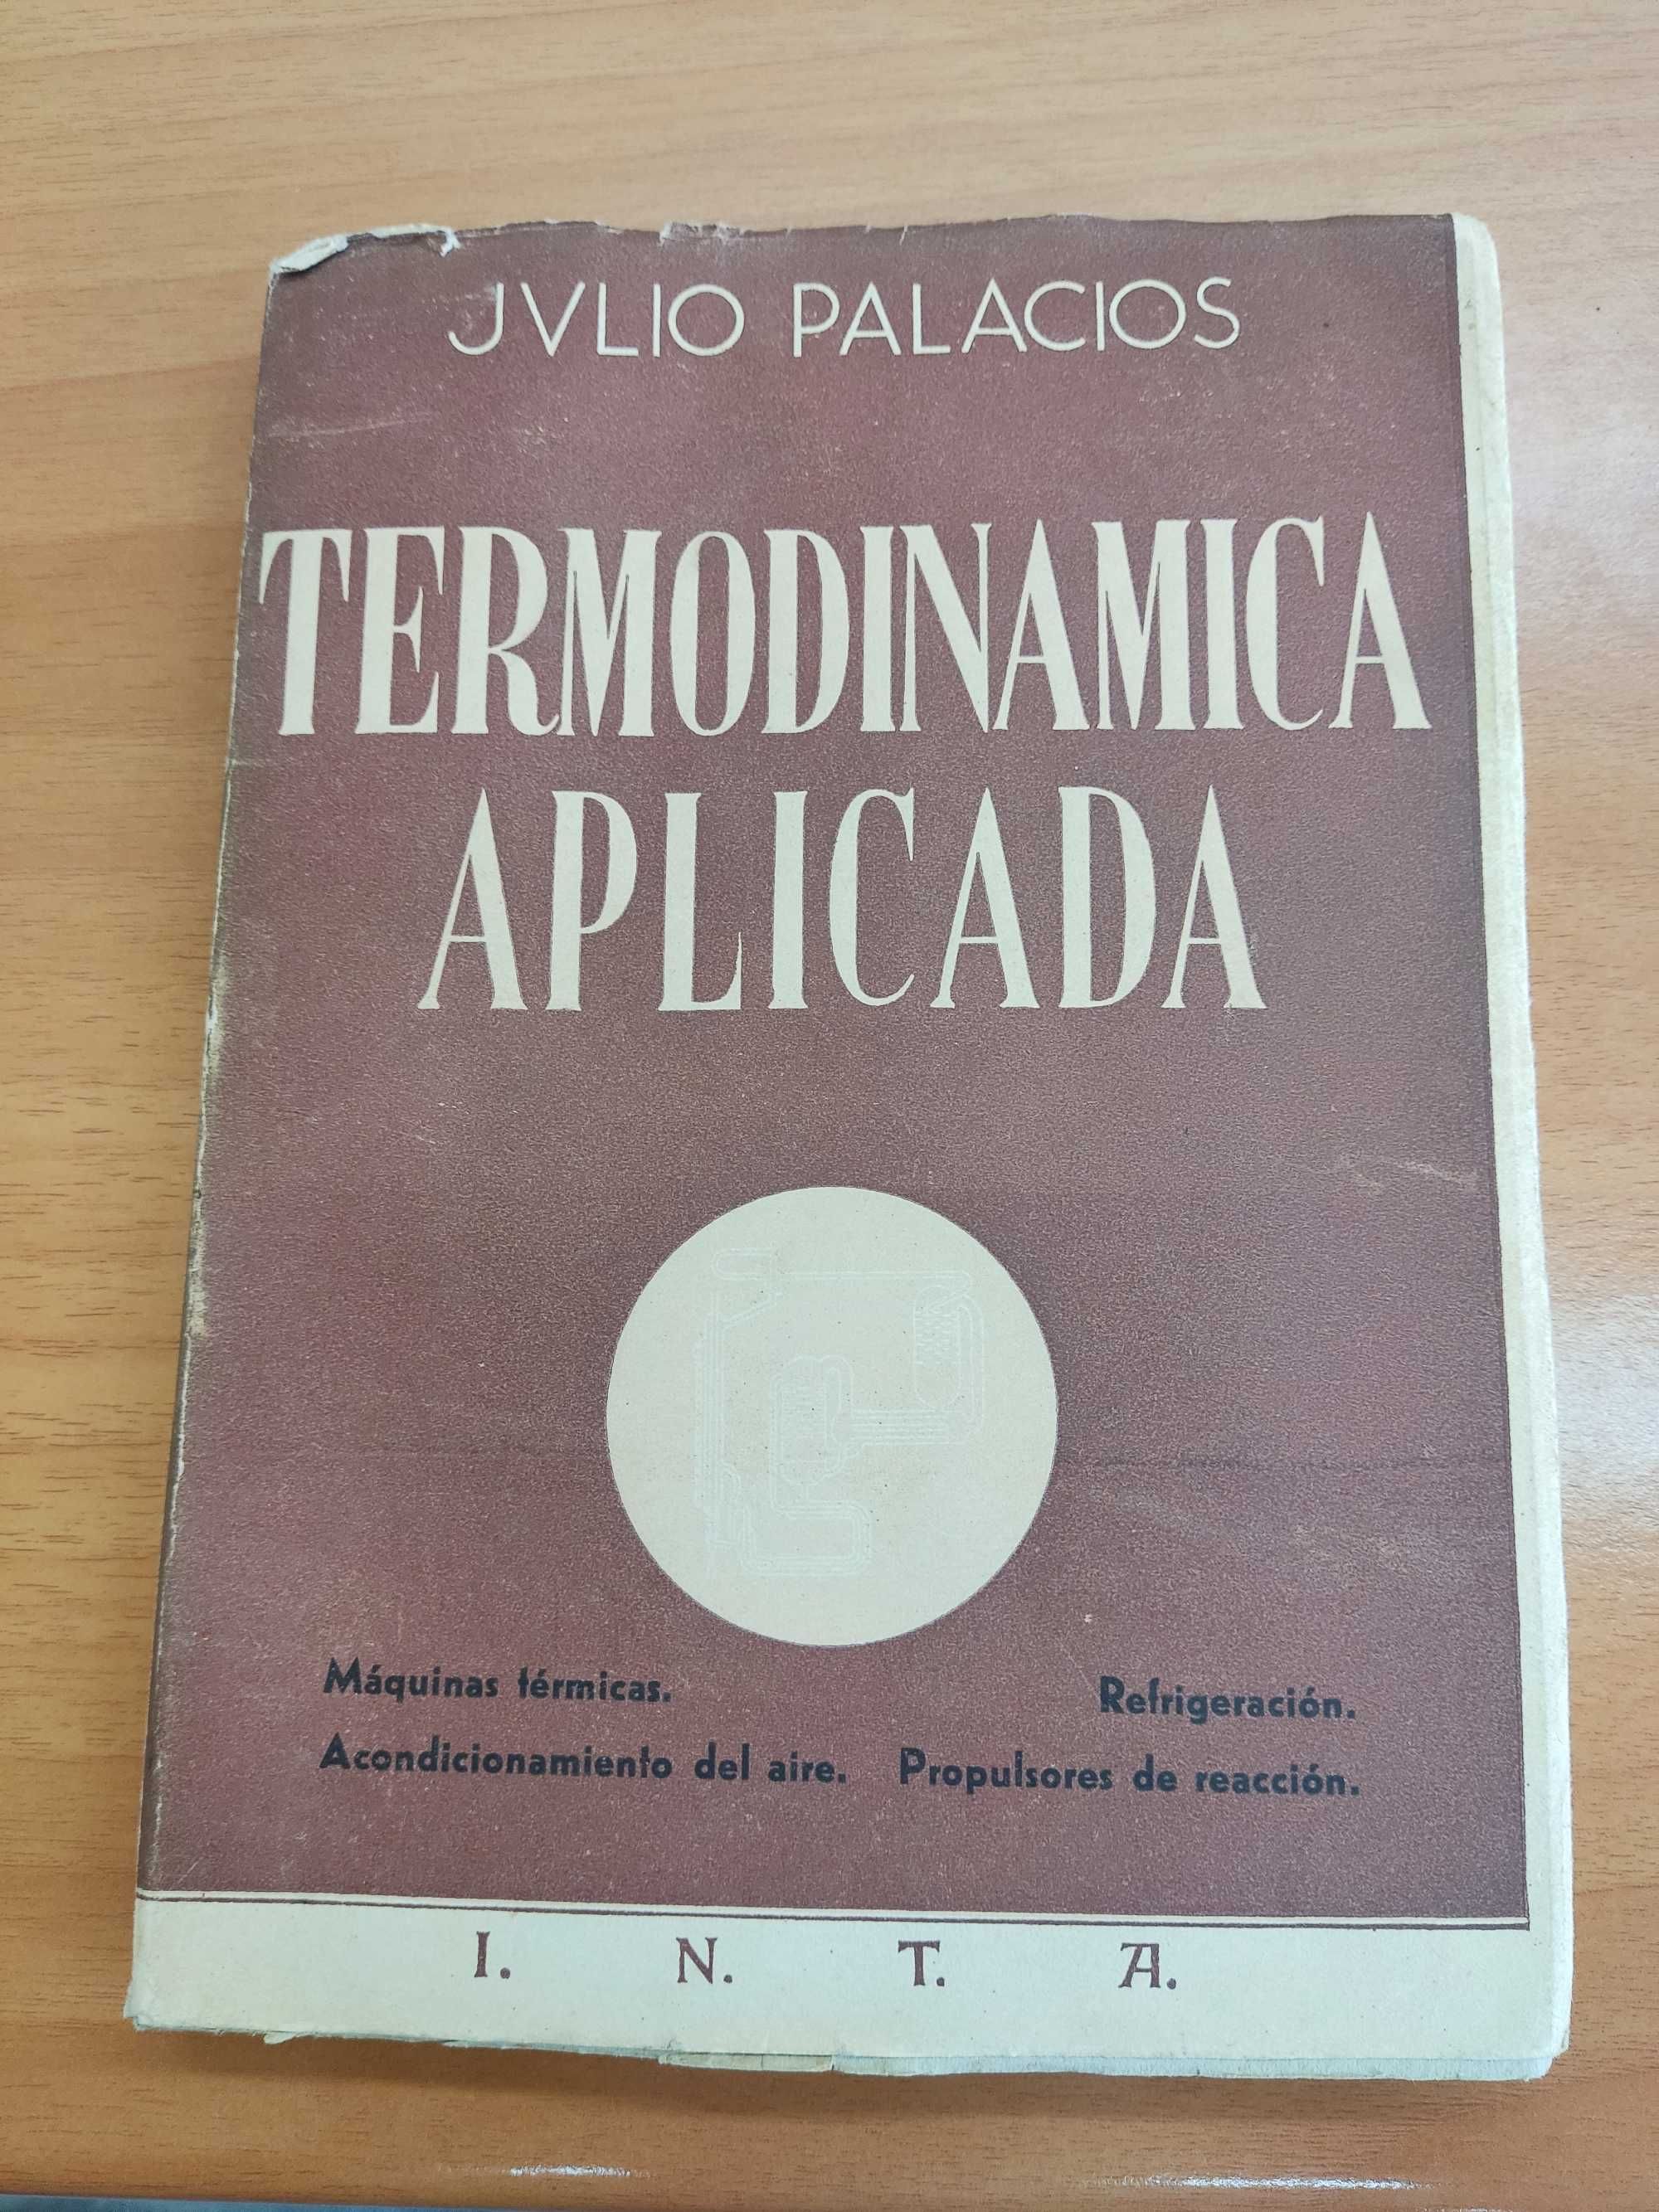 Termodinamica aplicada - Julio Palacios (2ª edição, 1951)